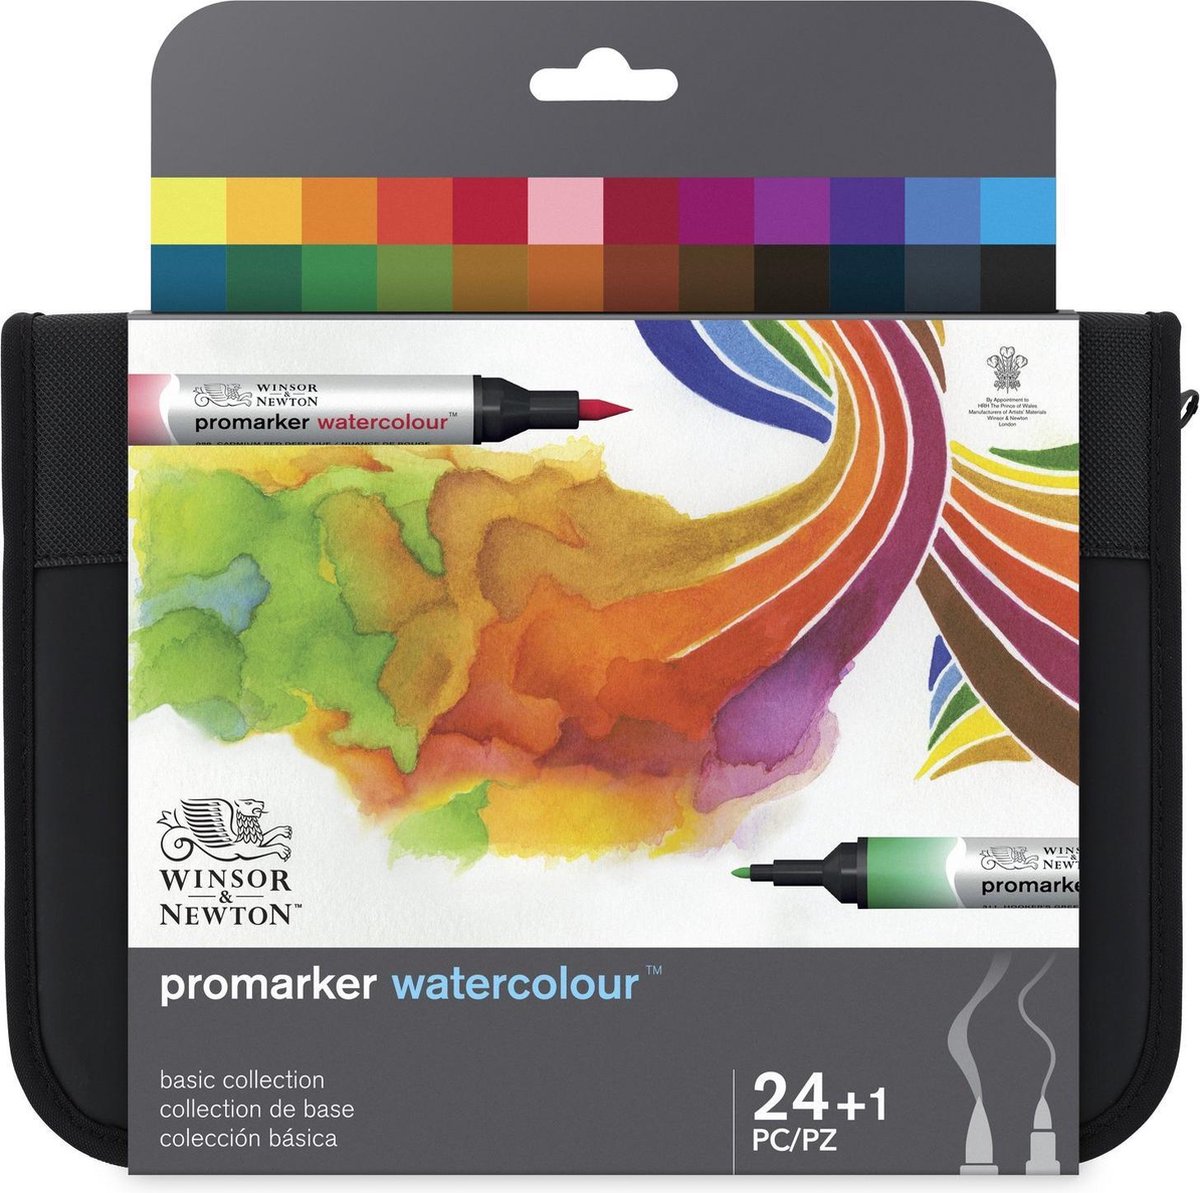 Winsor & Newton Promarker Watercolour etui 24 stuks